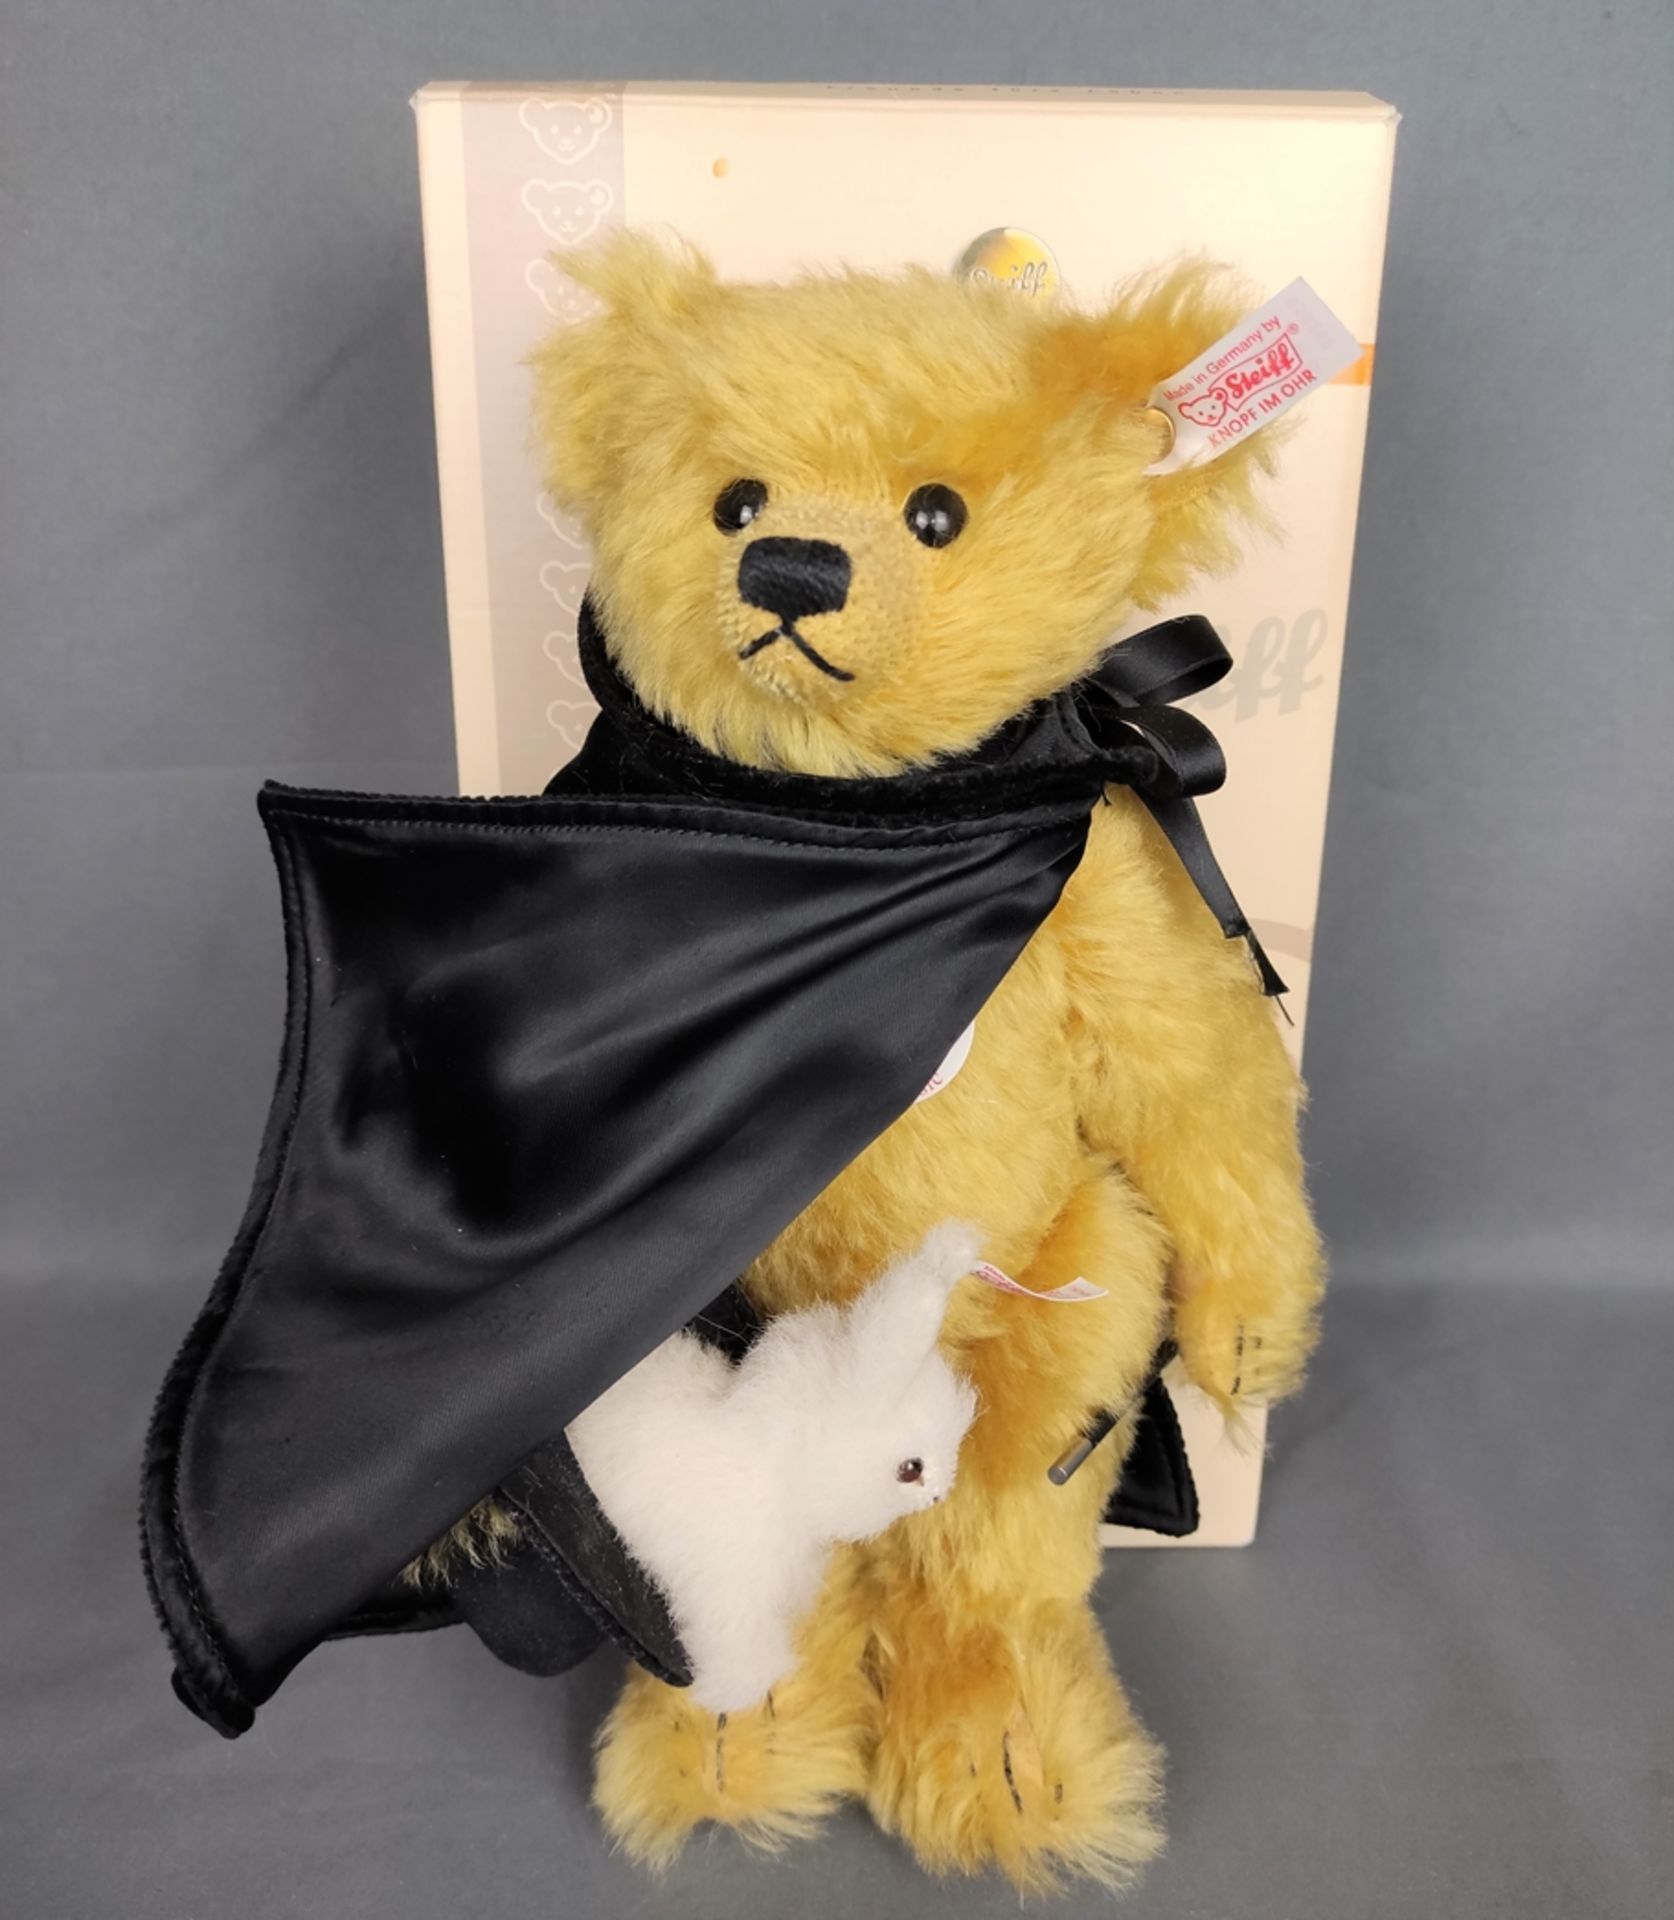 Teddybär, "Zauberer", Steiff, mit Kaninchen im Hut, blondes Mohair, Größe 30cm, in Originalkarton - Bild 2 aus 2